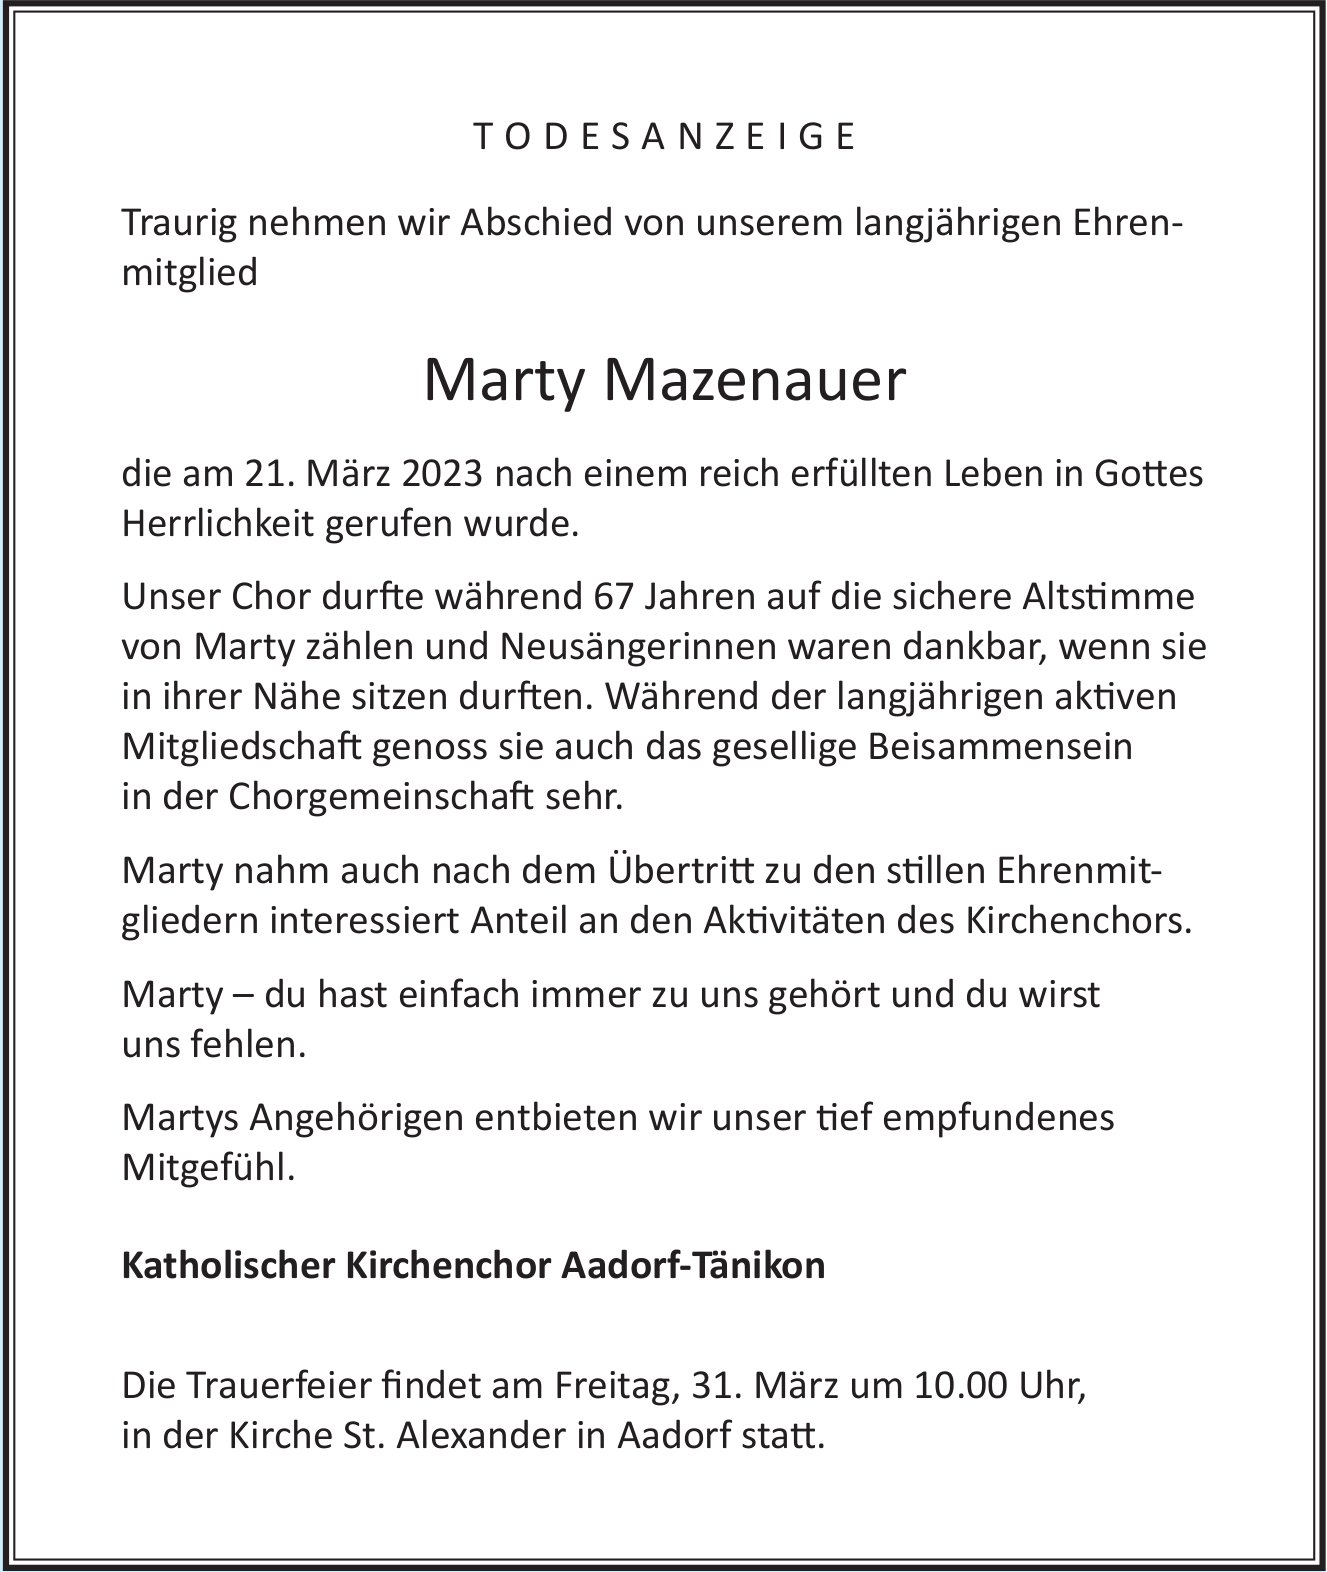 Mazenauer Marty, März 2023 / TA